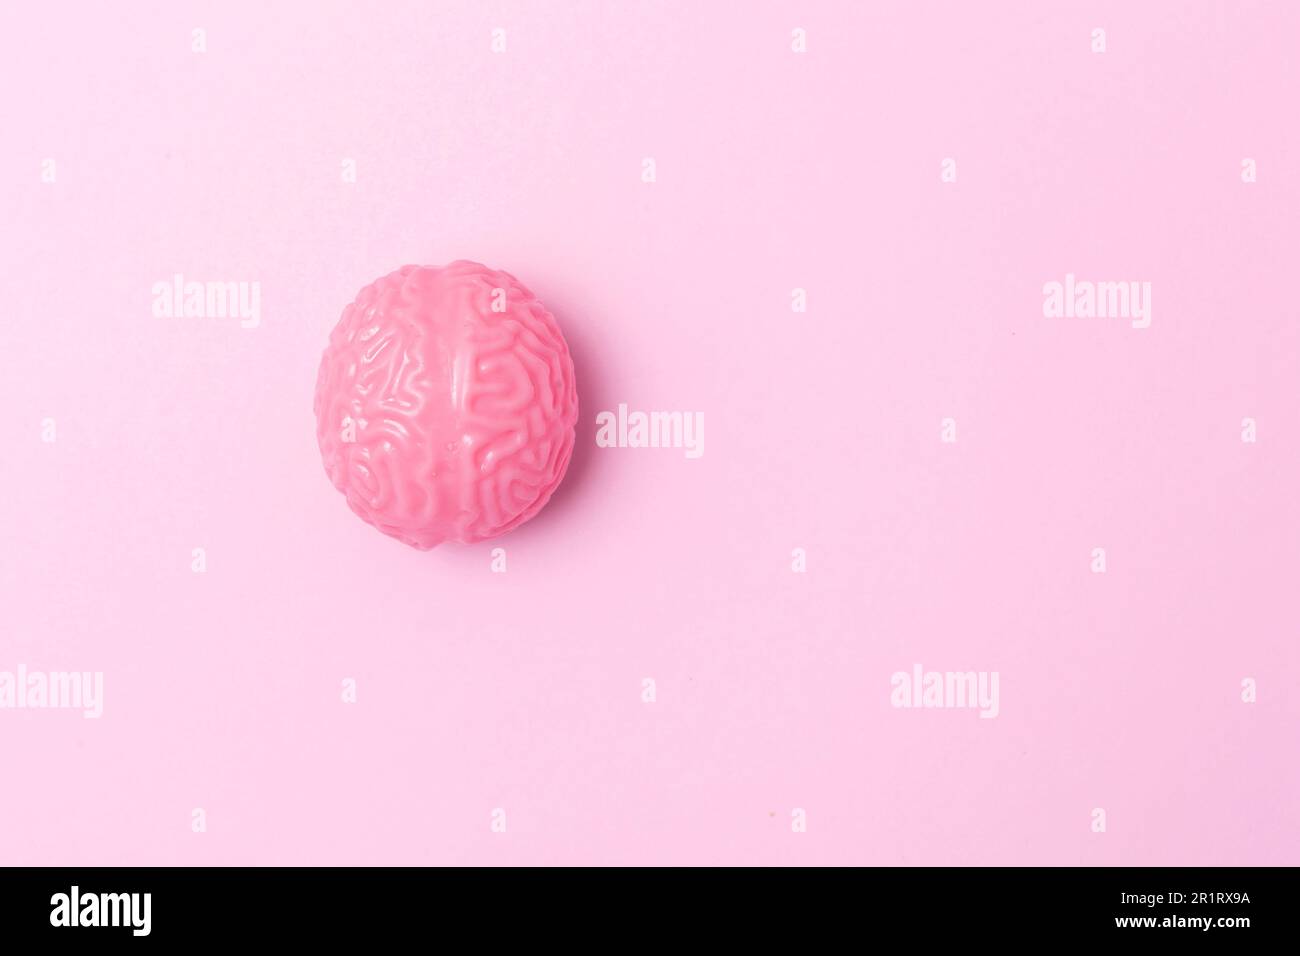 Gehirn auf pinkfarbenem Hintergrund Stockfoto